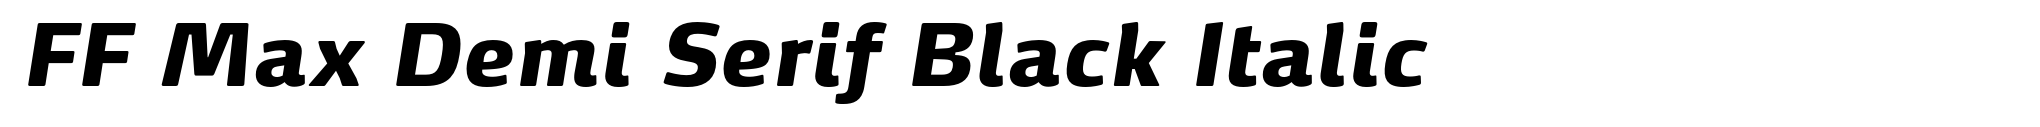 FF Max Demi Serif Black Italic image